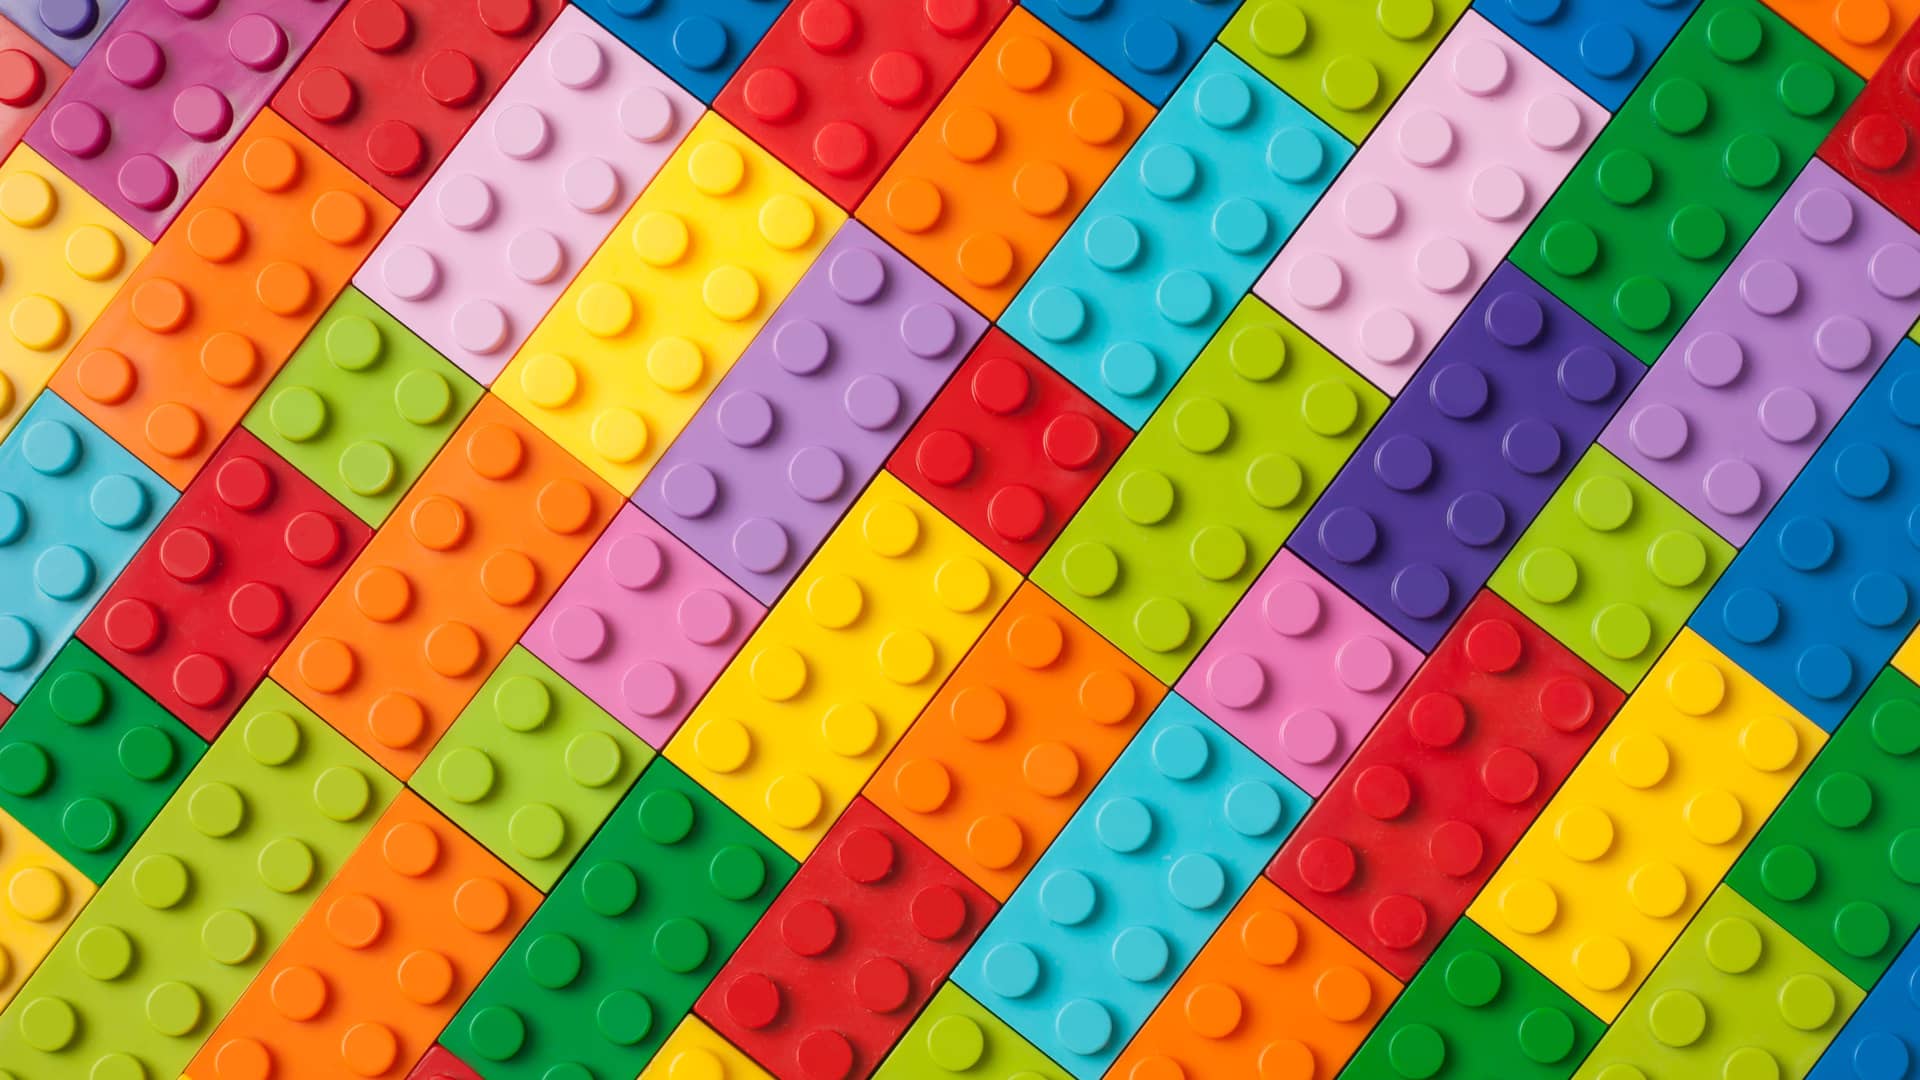 piezas de lego de colores para representar un de los mejores juegos que es el lego